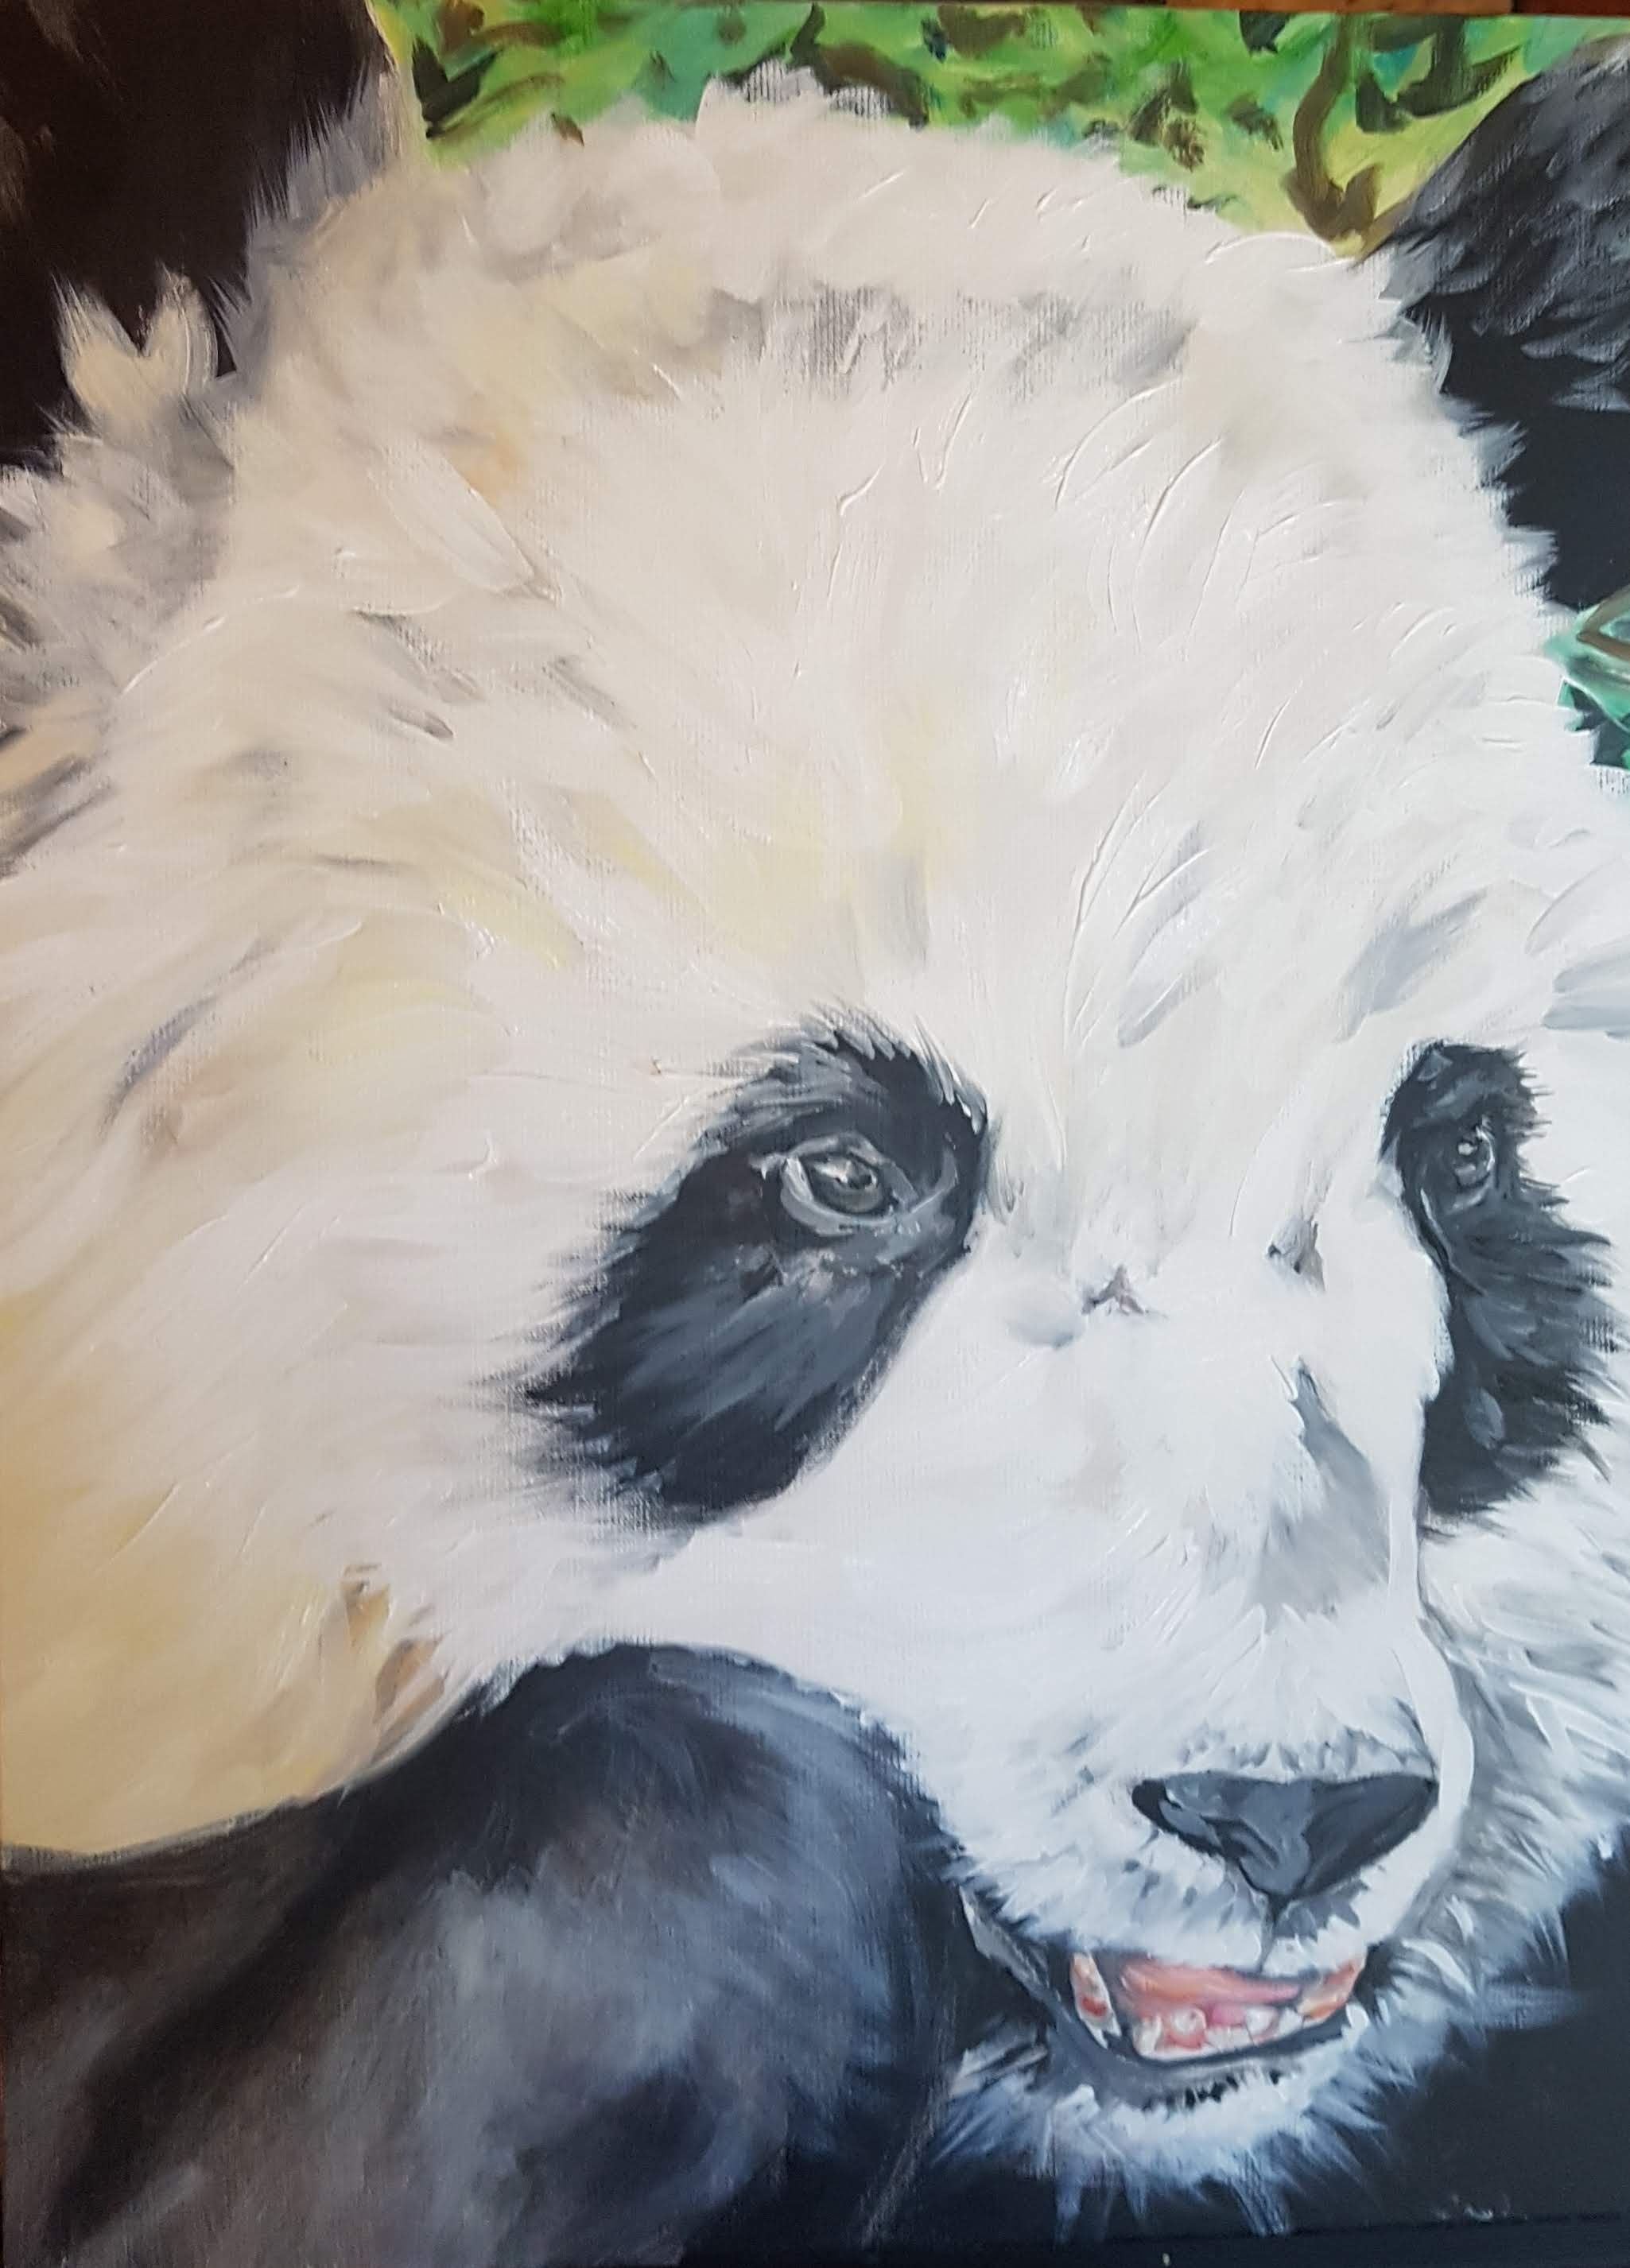 Giant Panda, Acrylic on Canvas, 18 x 24, $360"